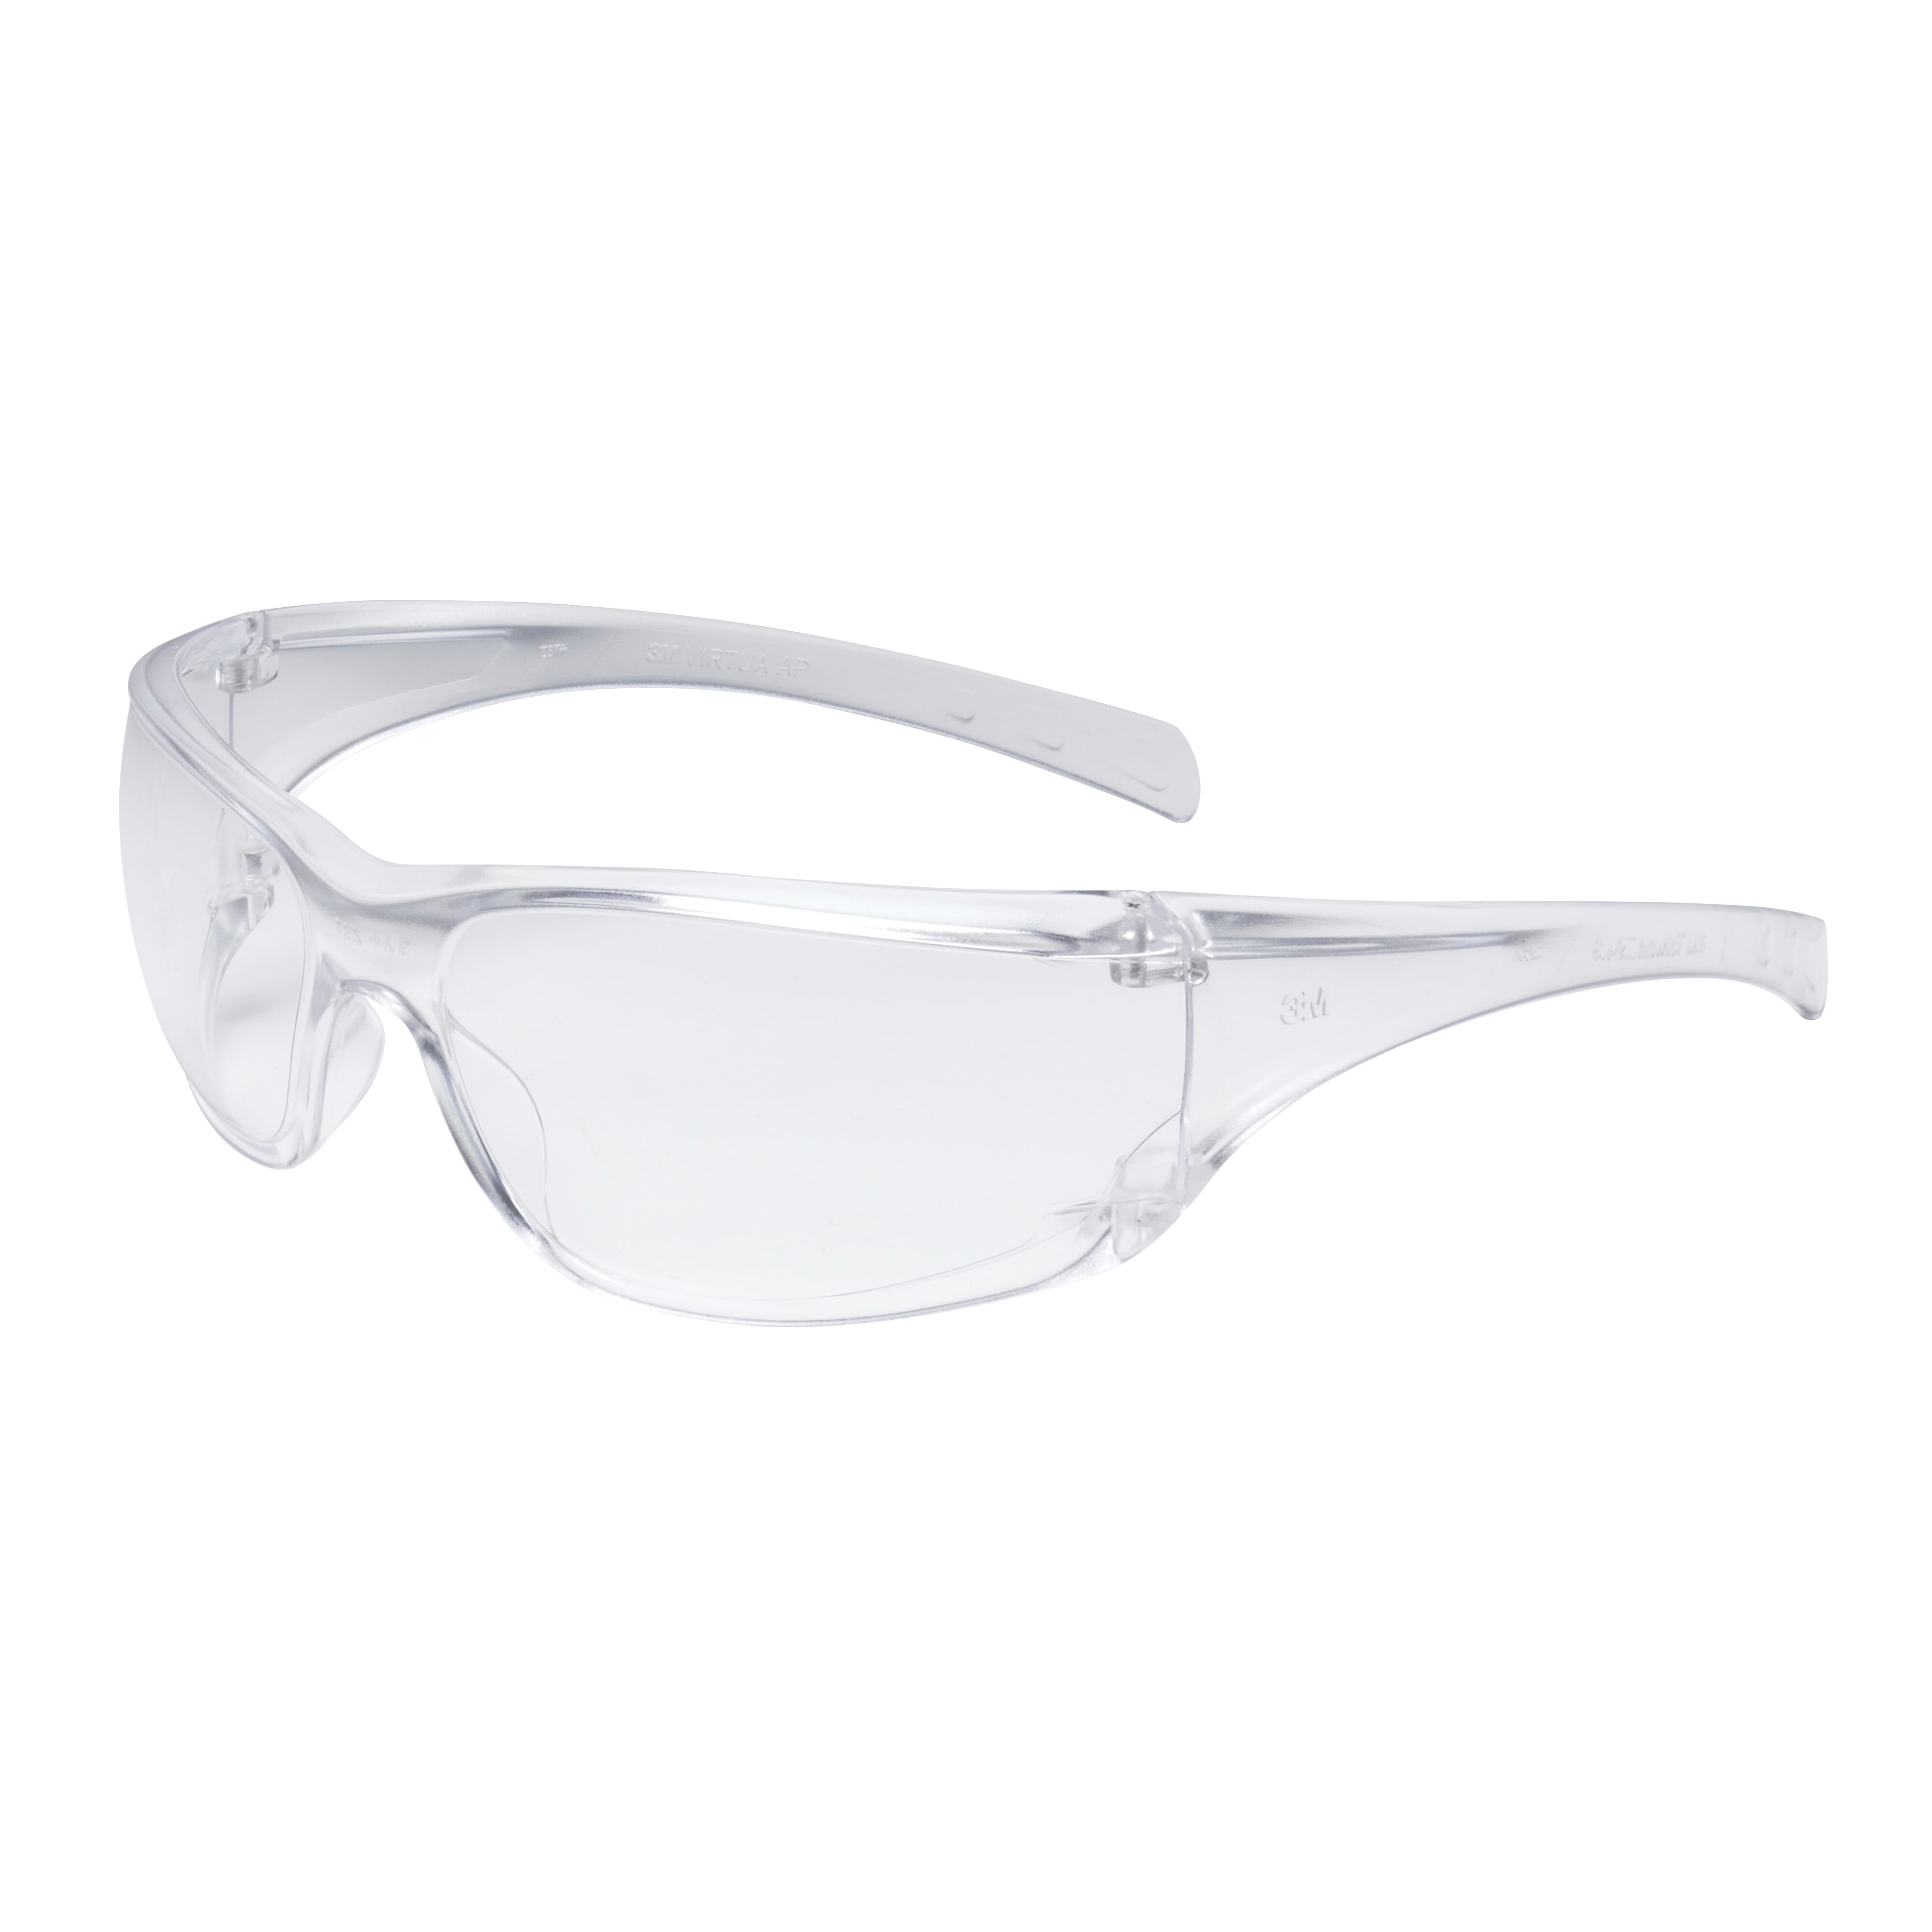 5 NEW 3M Lexa Anti-Fog Safety Glasses Clear Lens Black Frame 5 pc. 